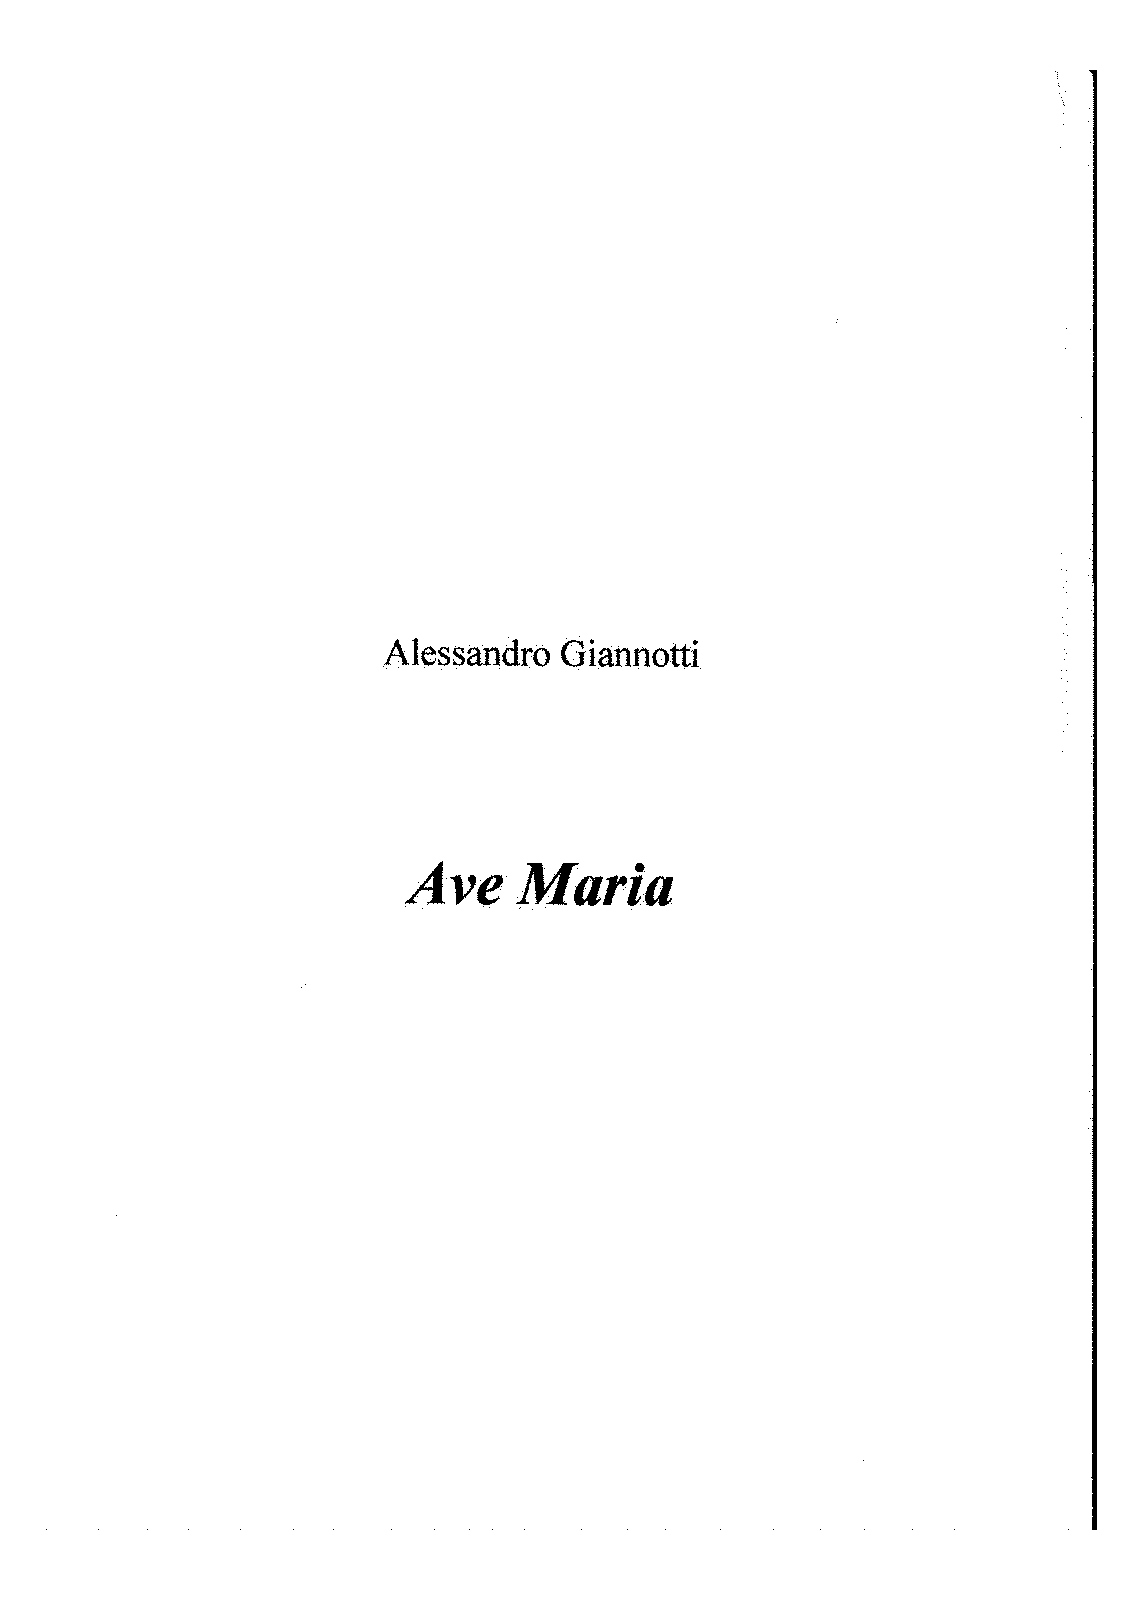 Ave Maria (Giannotti, Alessandro) - IMSLP